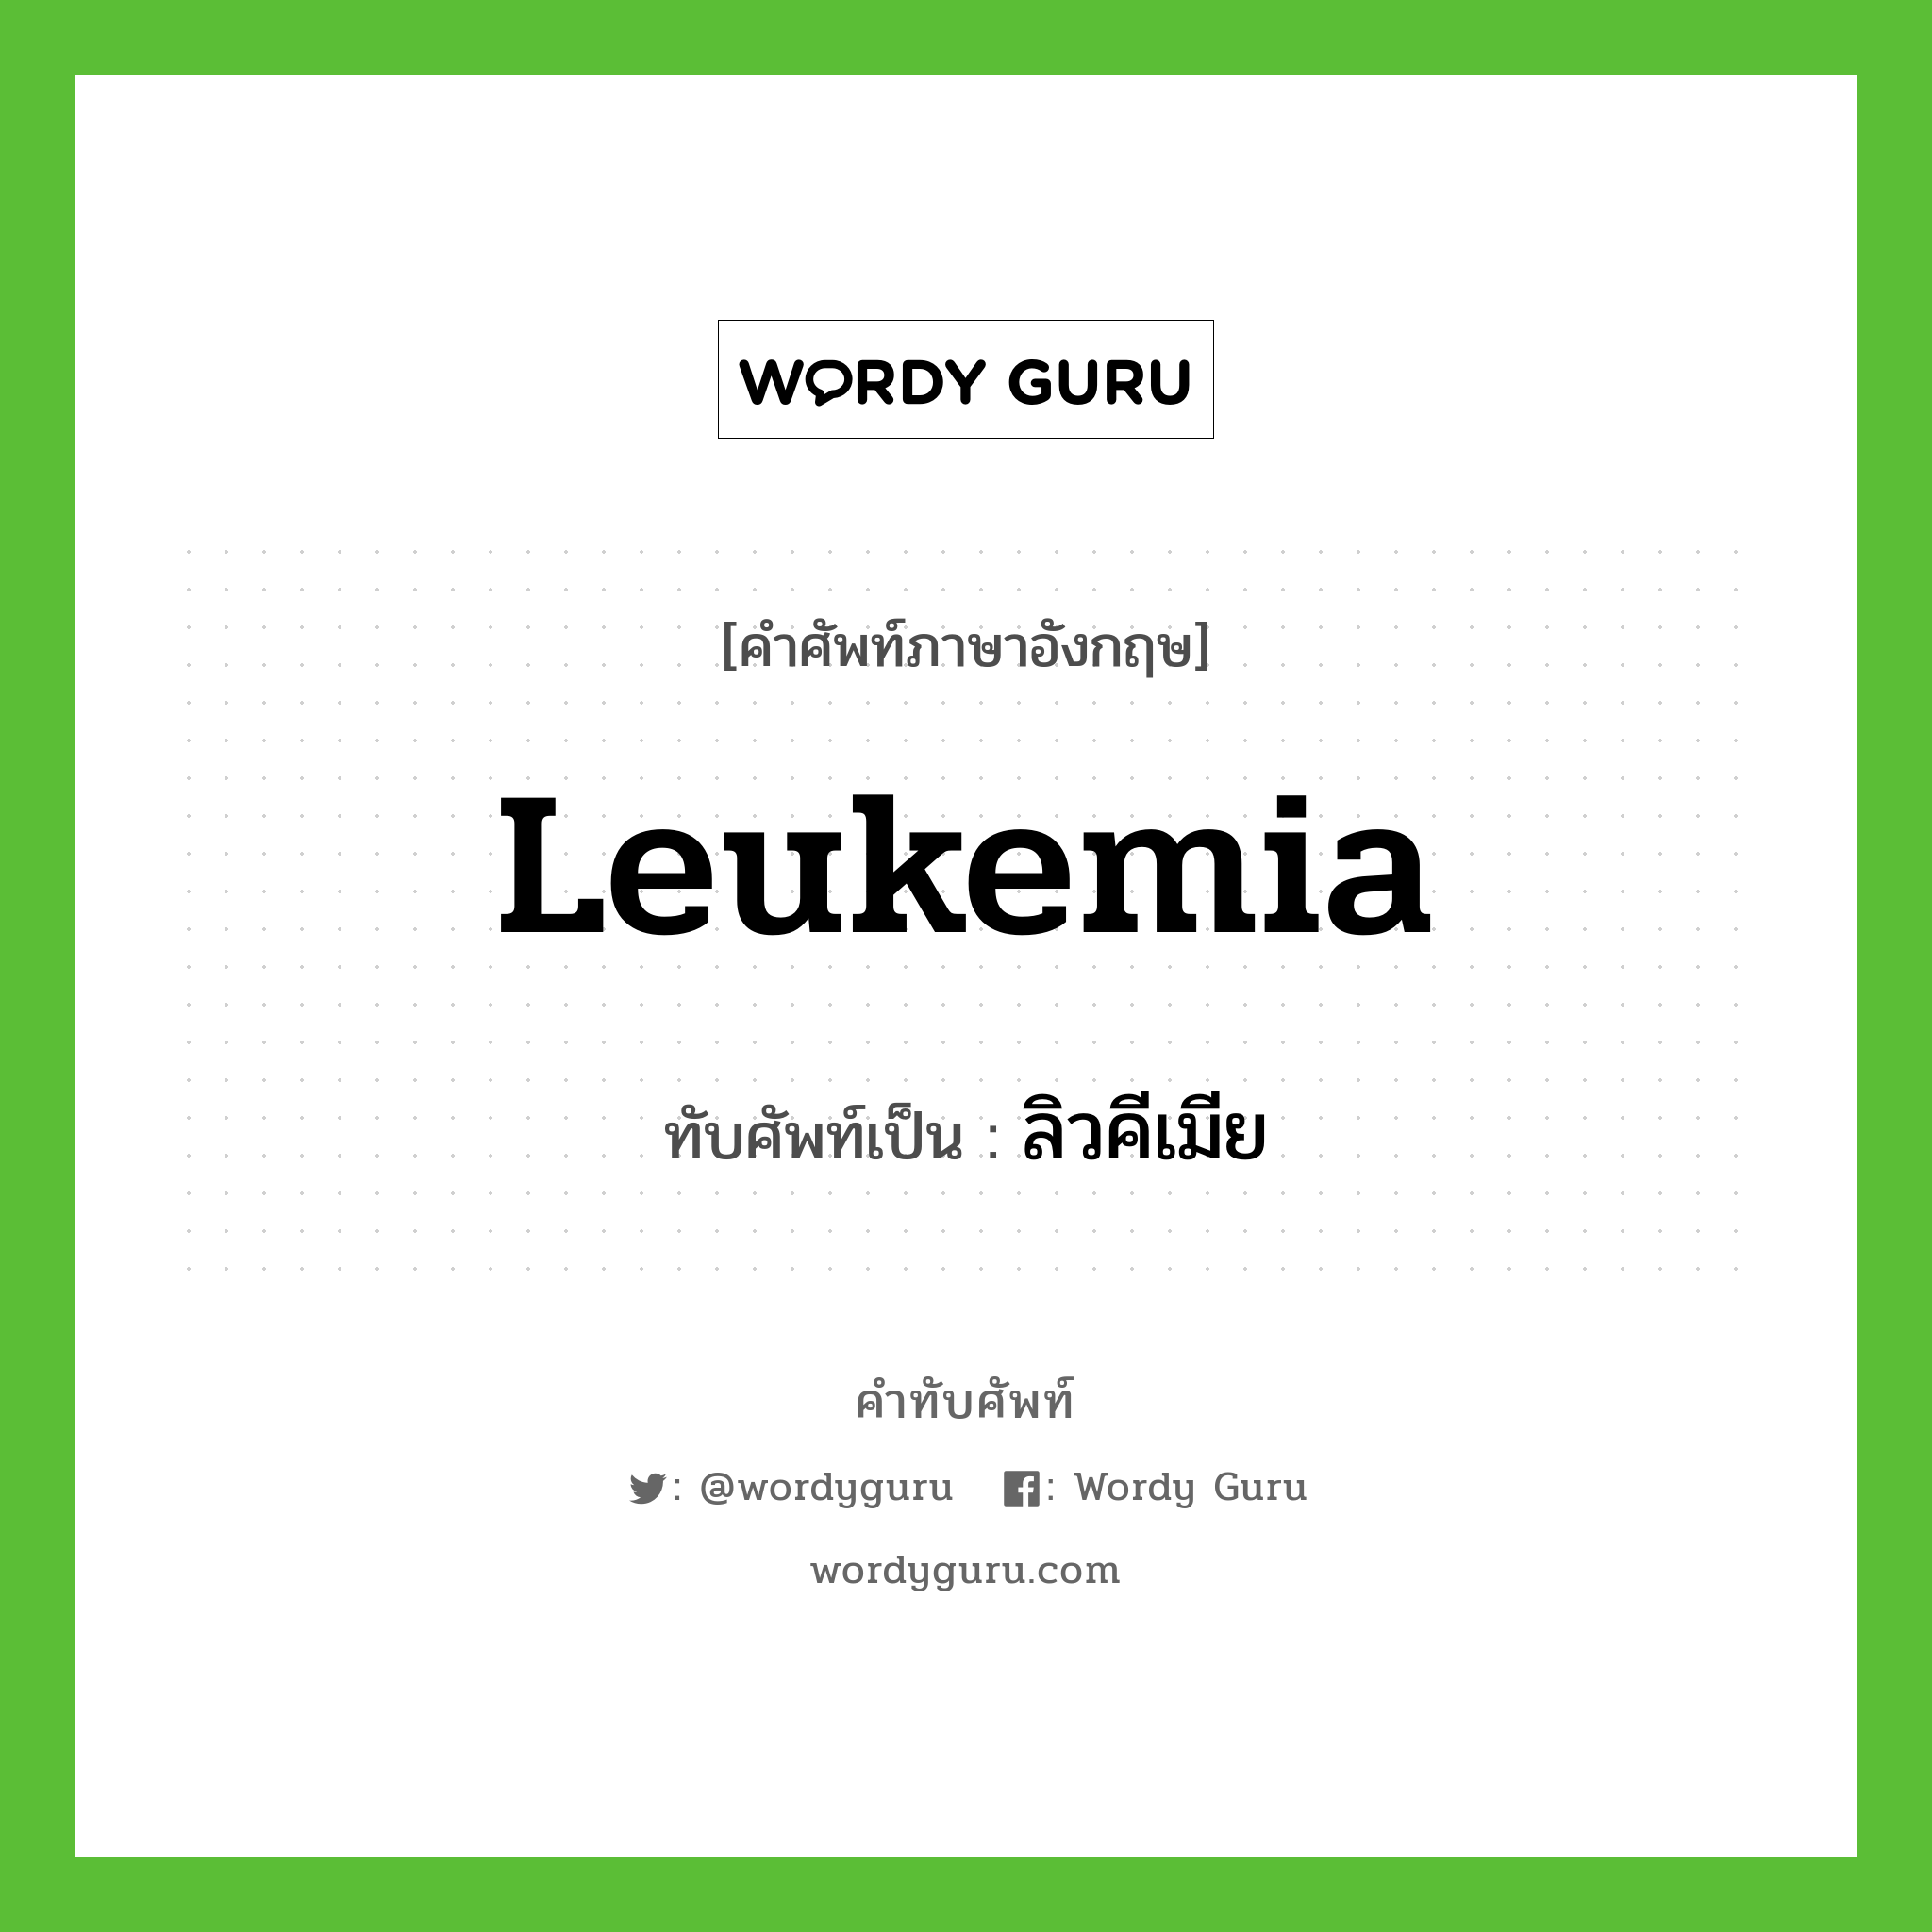 leukemia เขียนเป็นคำไทยว่าอะไร?, คำศัพท์ภาษาอังกฤษ leukemia ทับศัพท์เป็น ลิวคีเมีย